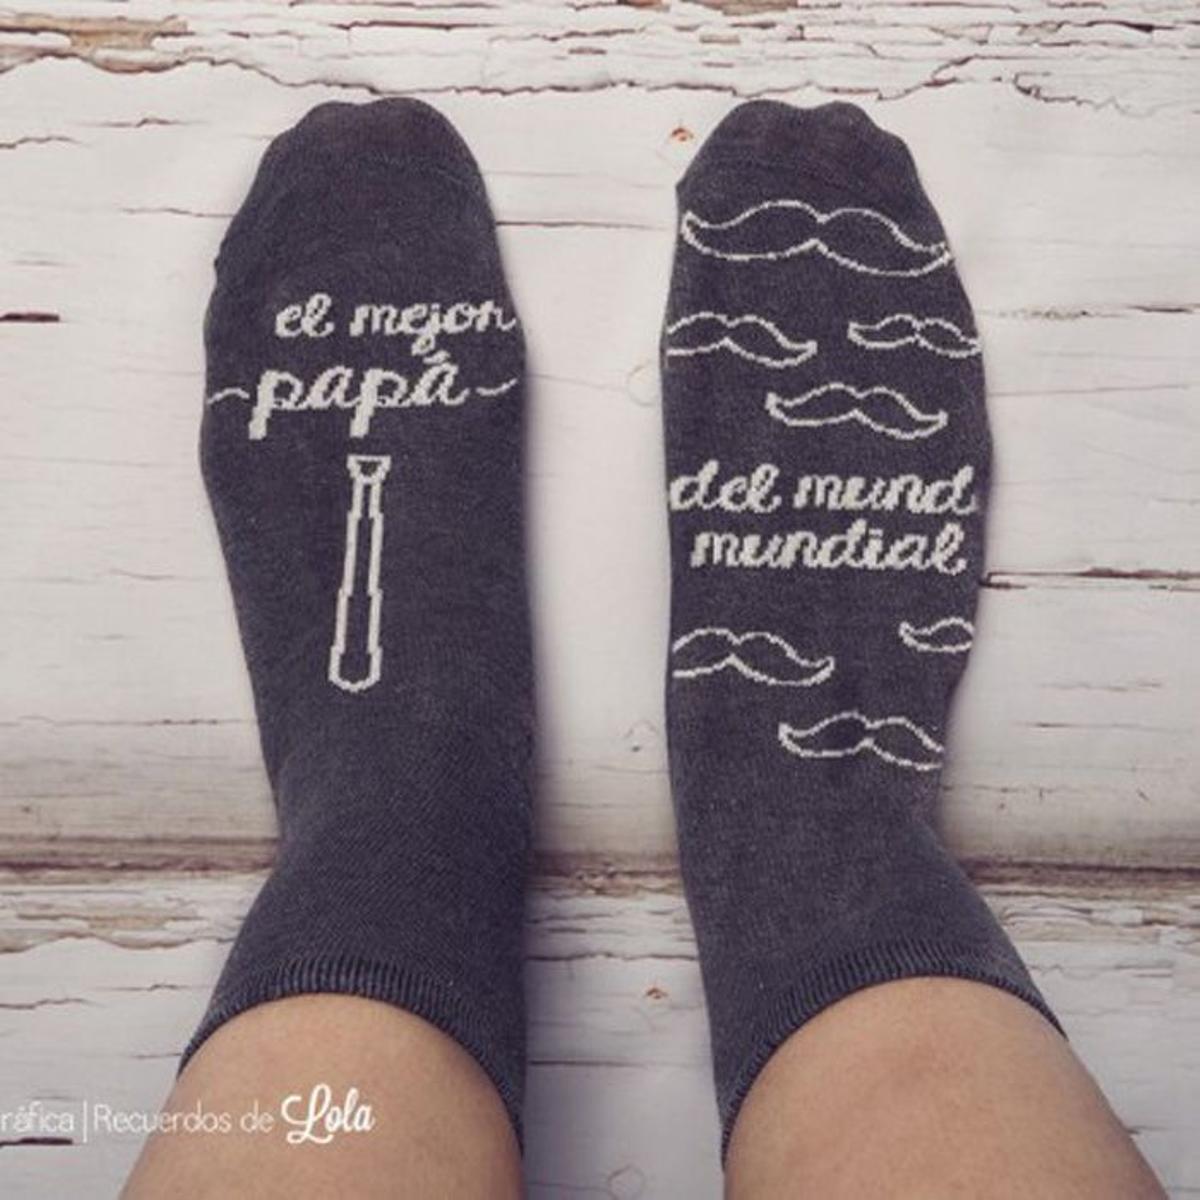 Día del padre 2015: unos calcetines